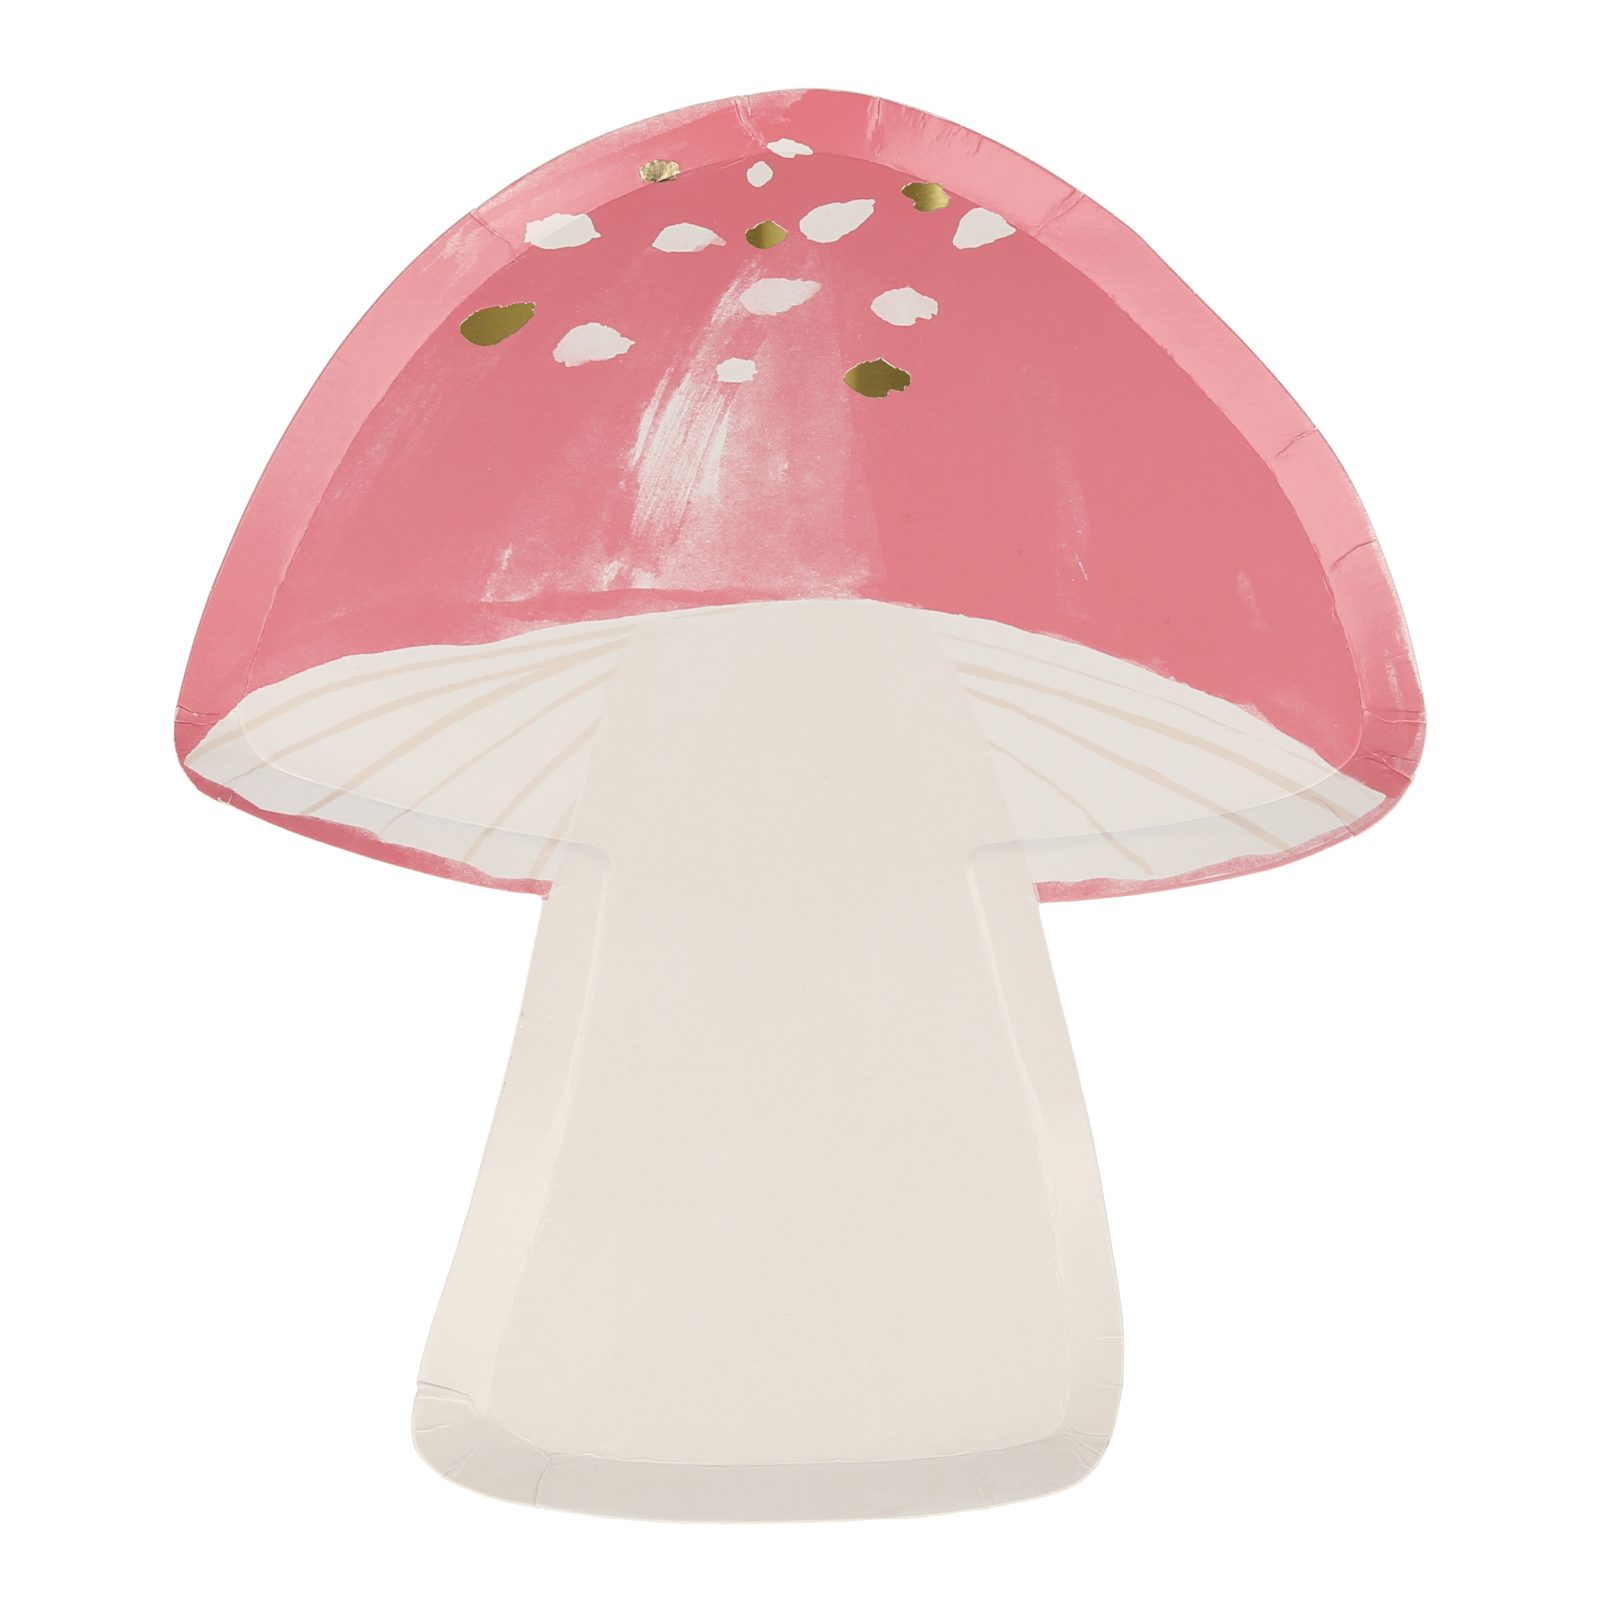 meri meri fairy toadstool plates - pink